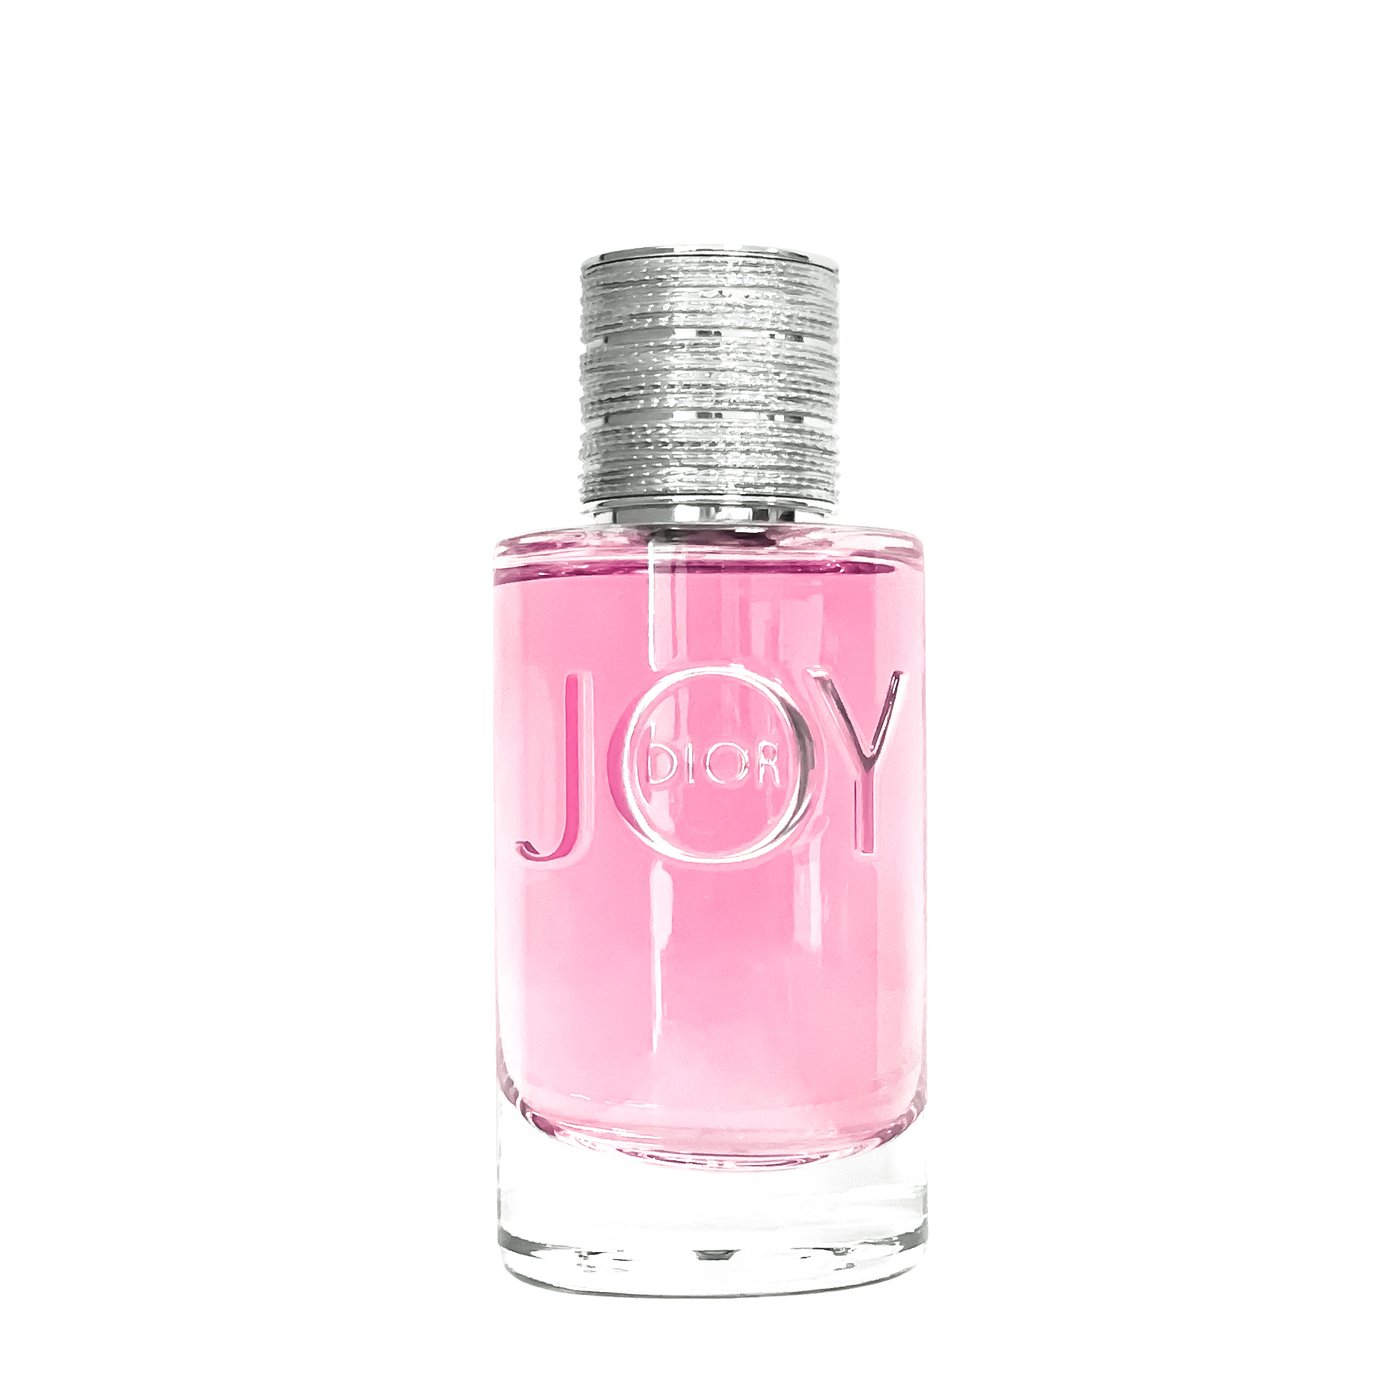 joy by dior - 54% OFF - naonsite.com